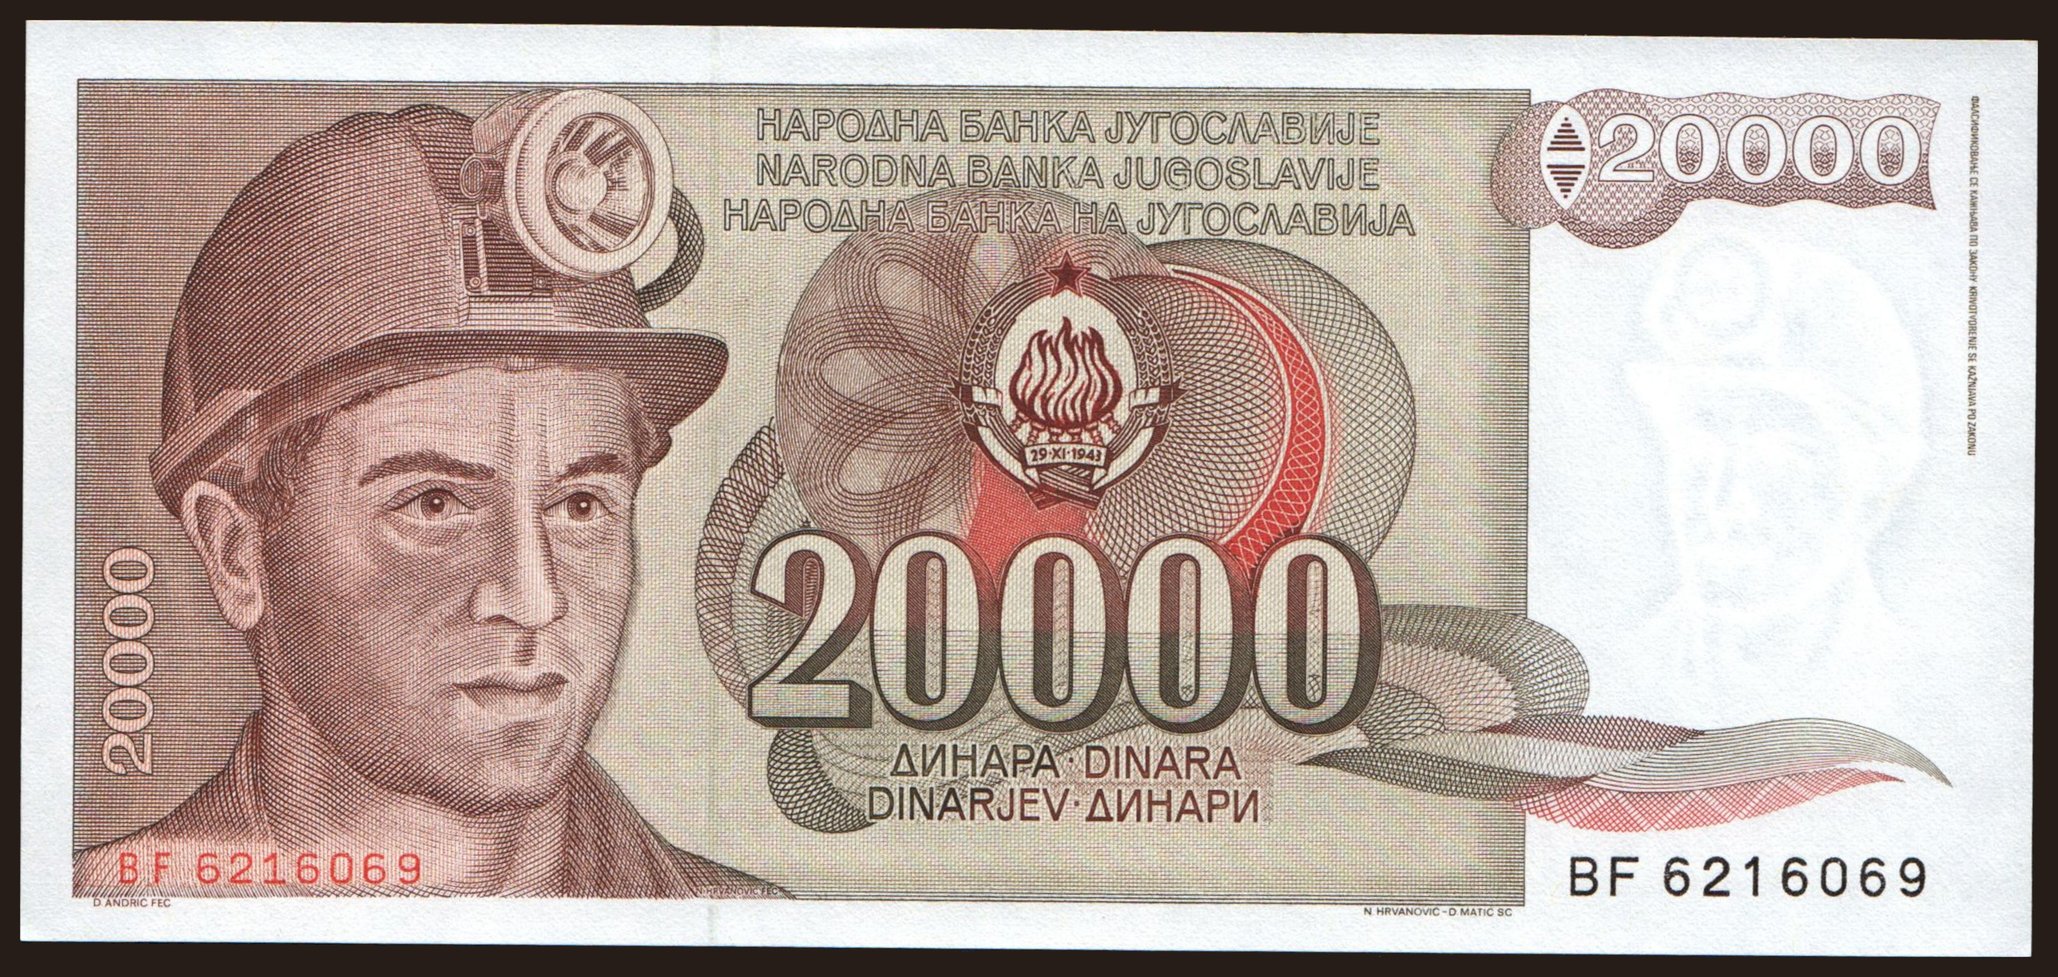 20.000 dinara, 1987